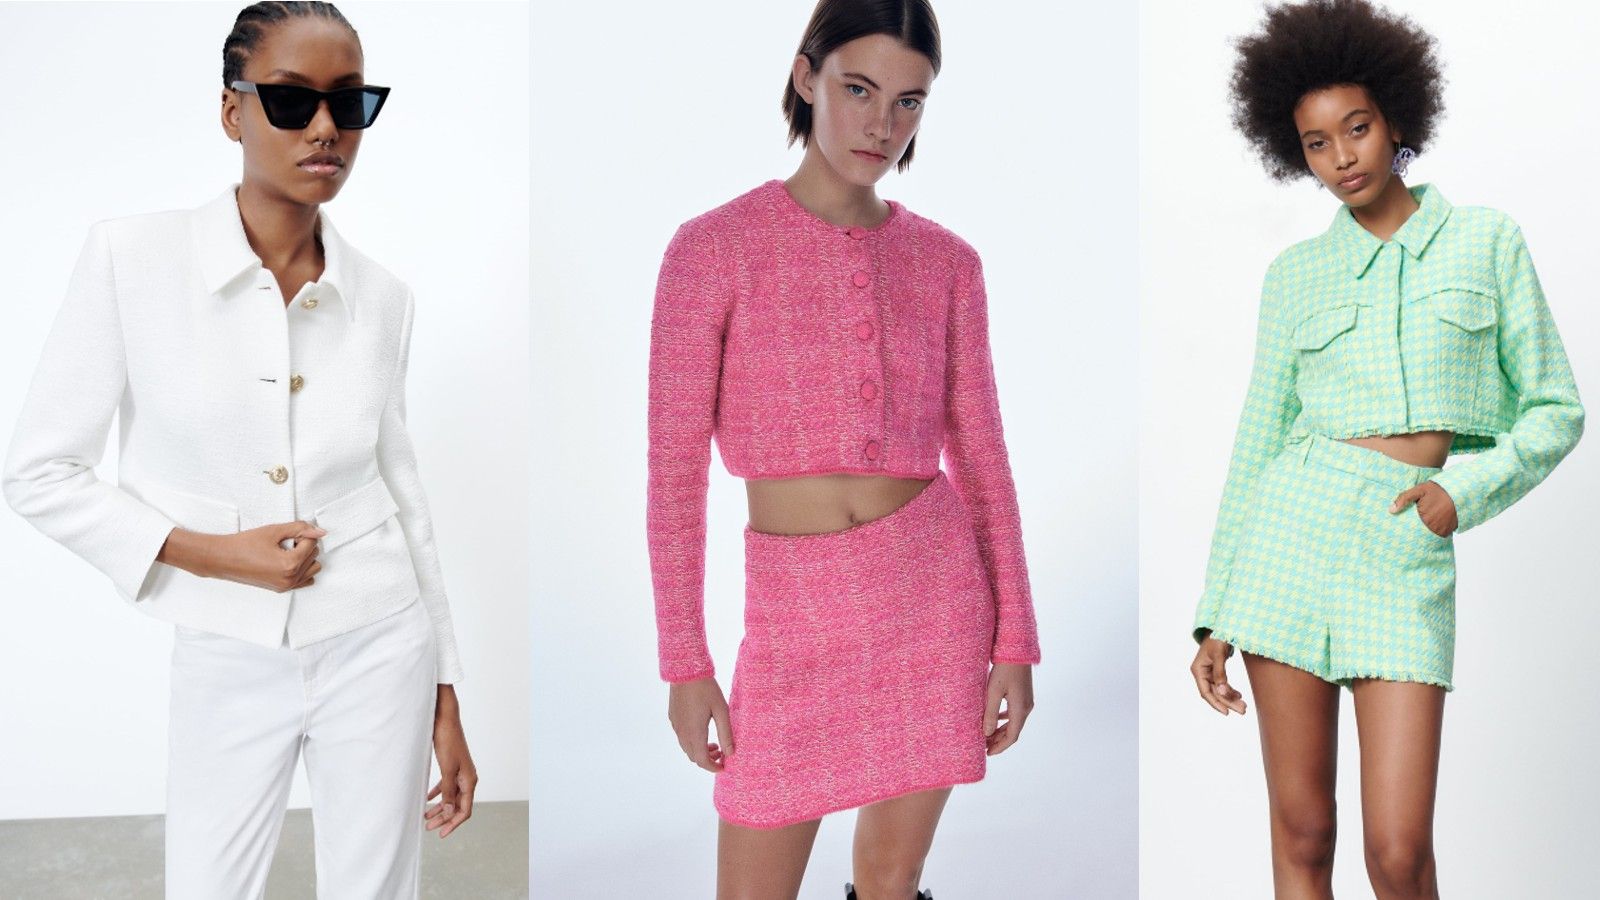 Limón evaluar regional Chaqueta tipo Chanel Zara 2022: Las cinco chaquetas ideales para un look  elegante